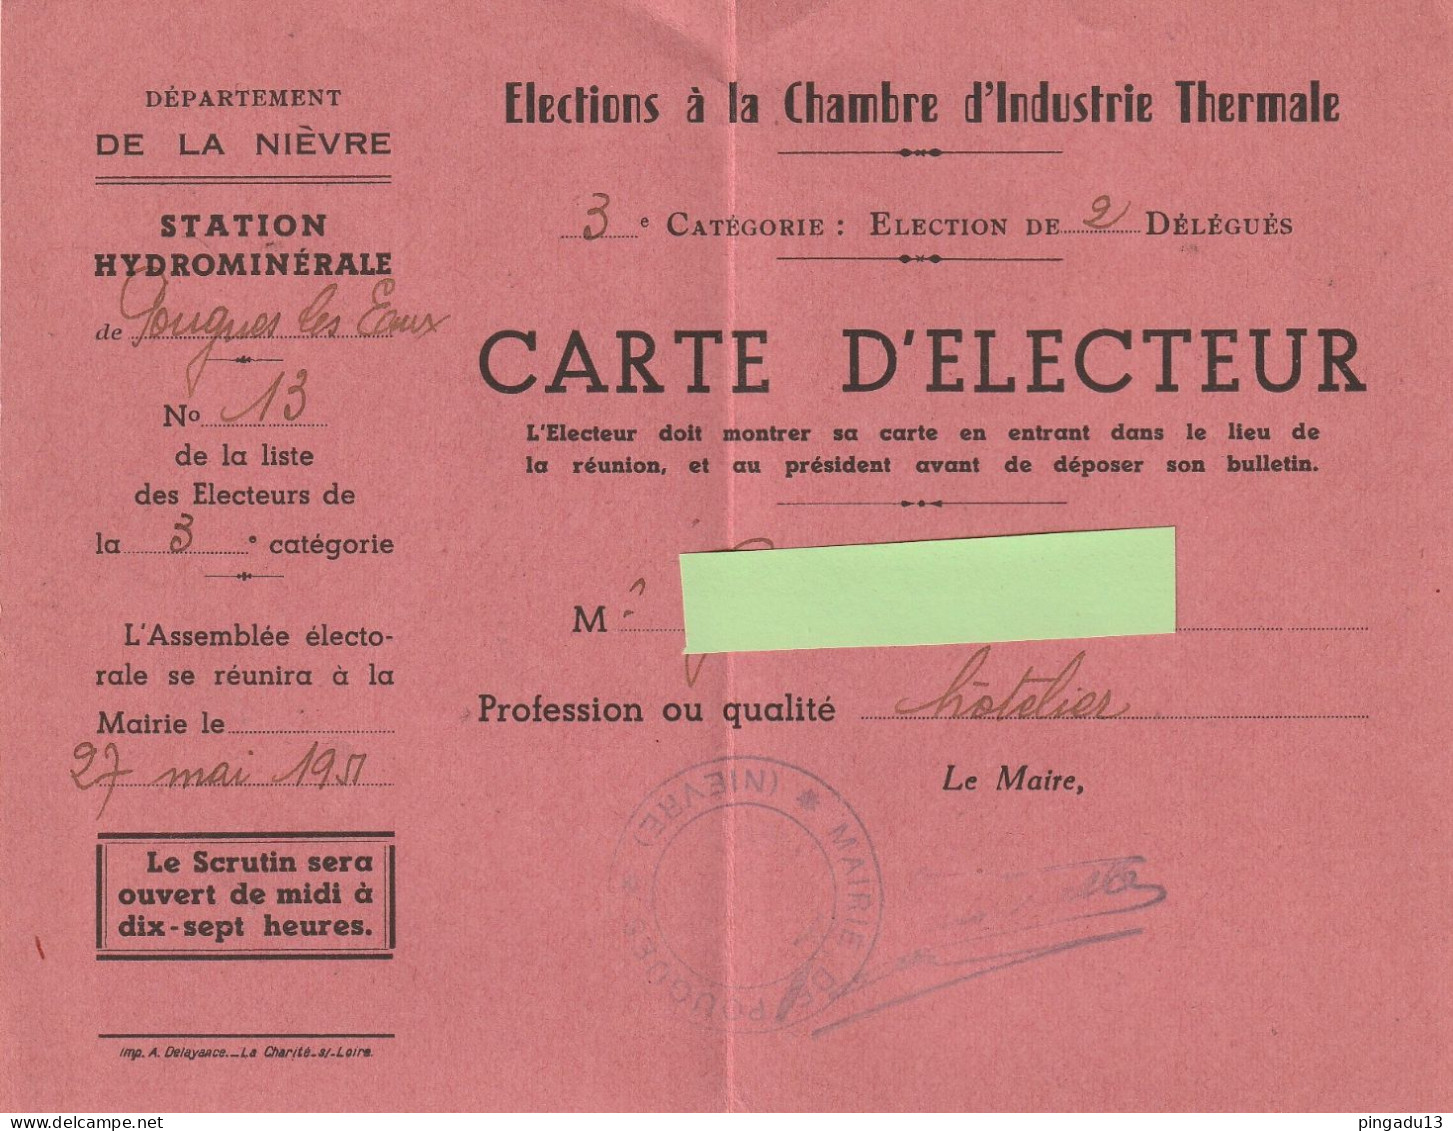 Fixe Nièvre Pougues Les Eaux Station Hydrominérale Rare Carte D'électeur Elections Chambre Industrie Thermale - Historical Documents